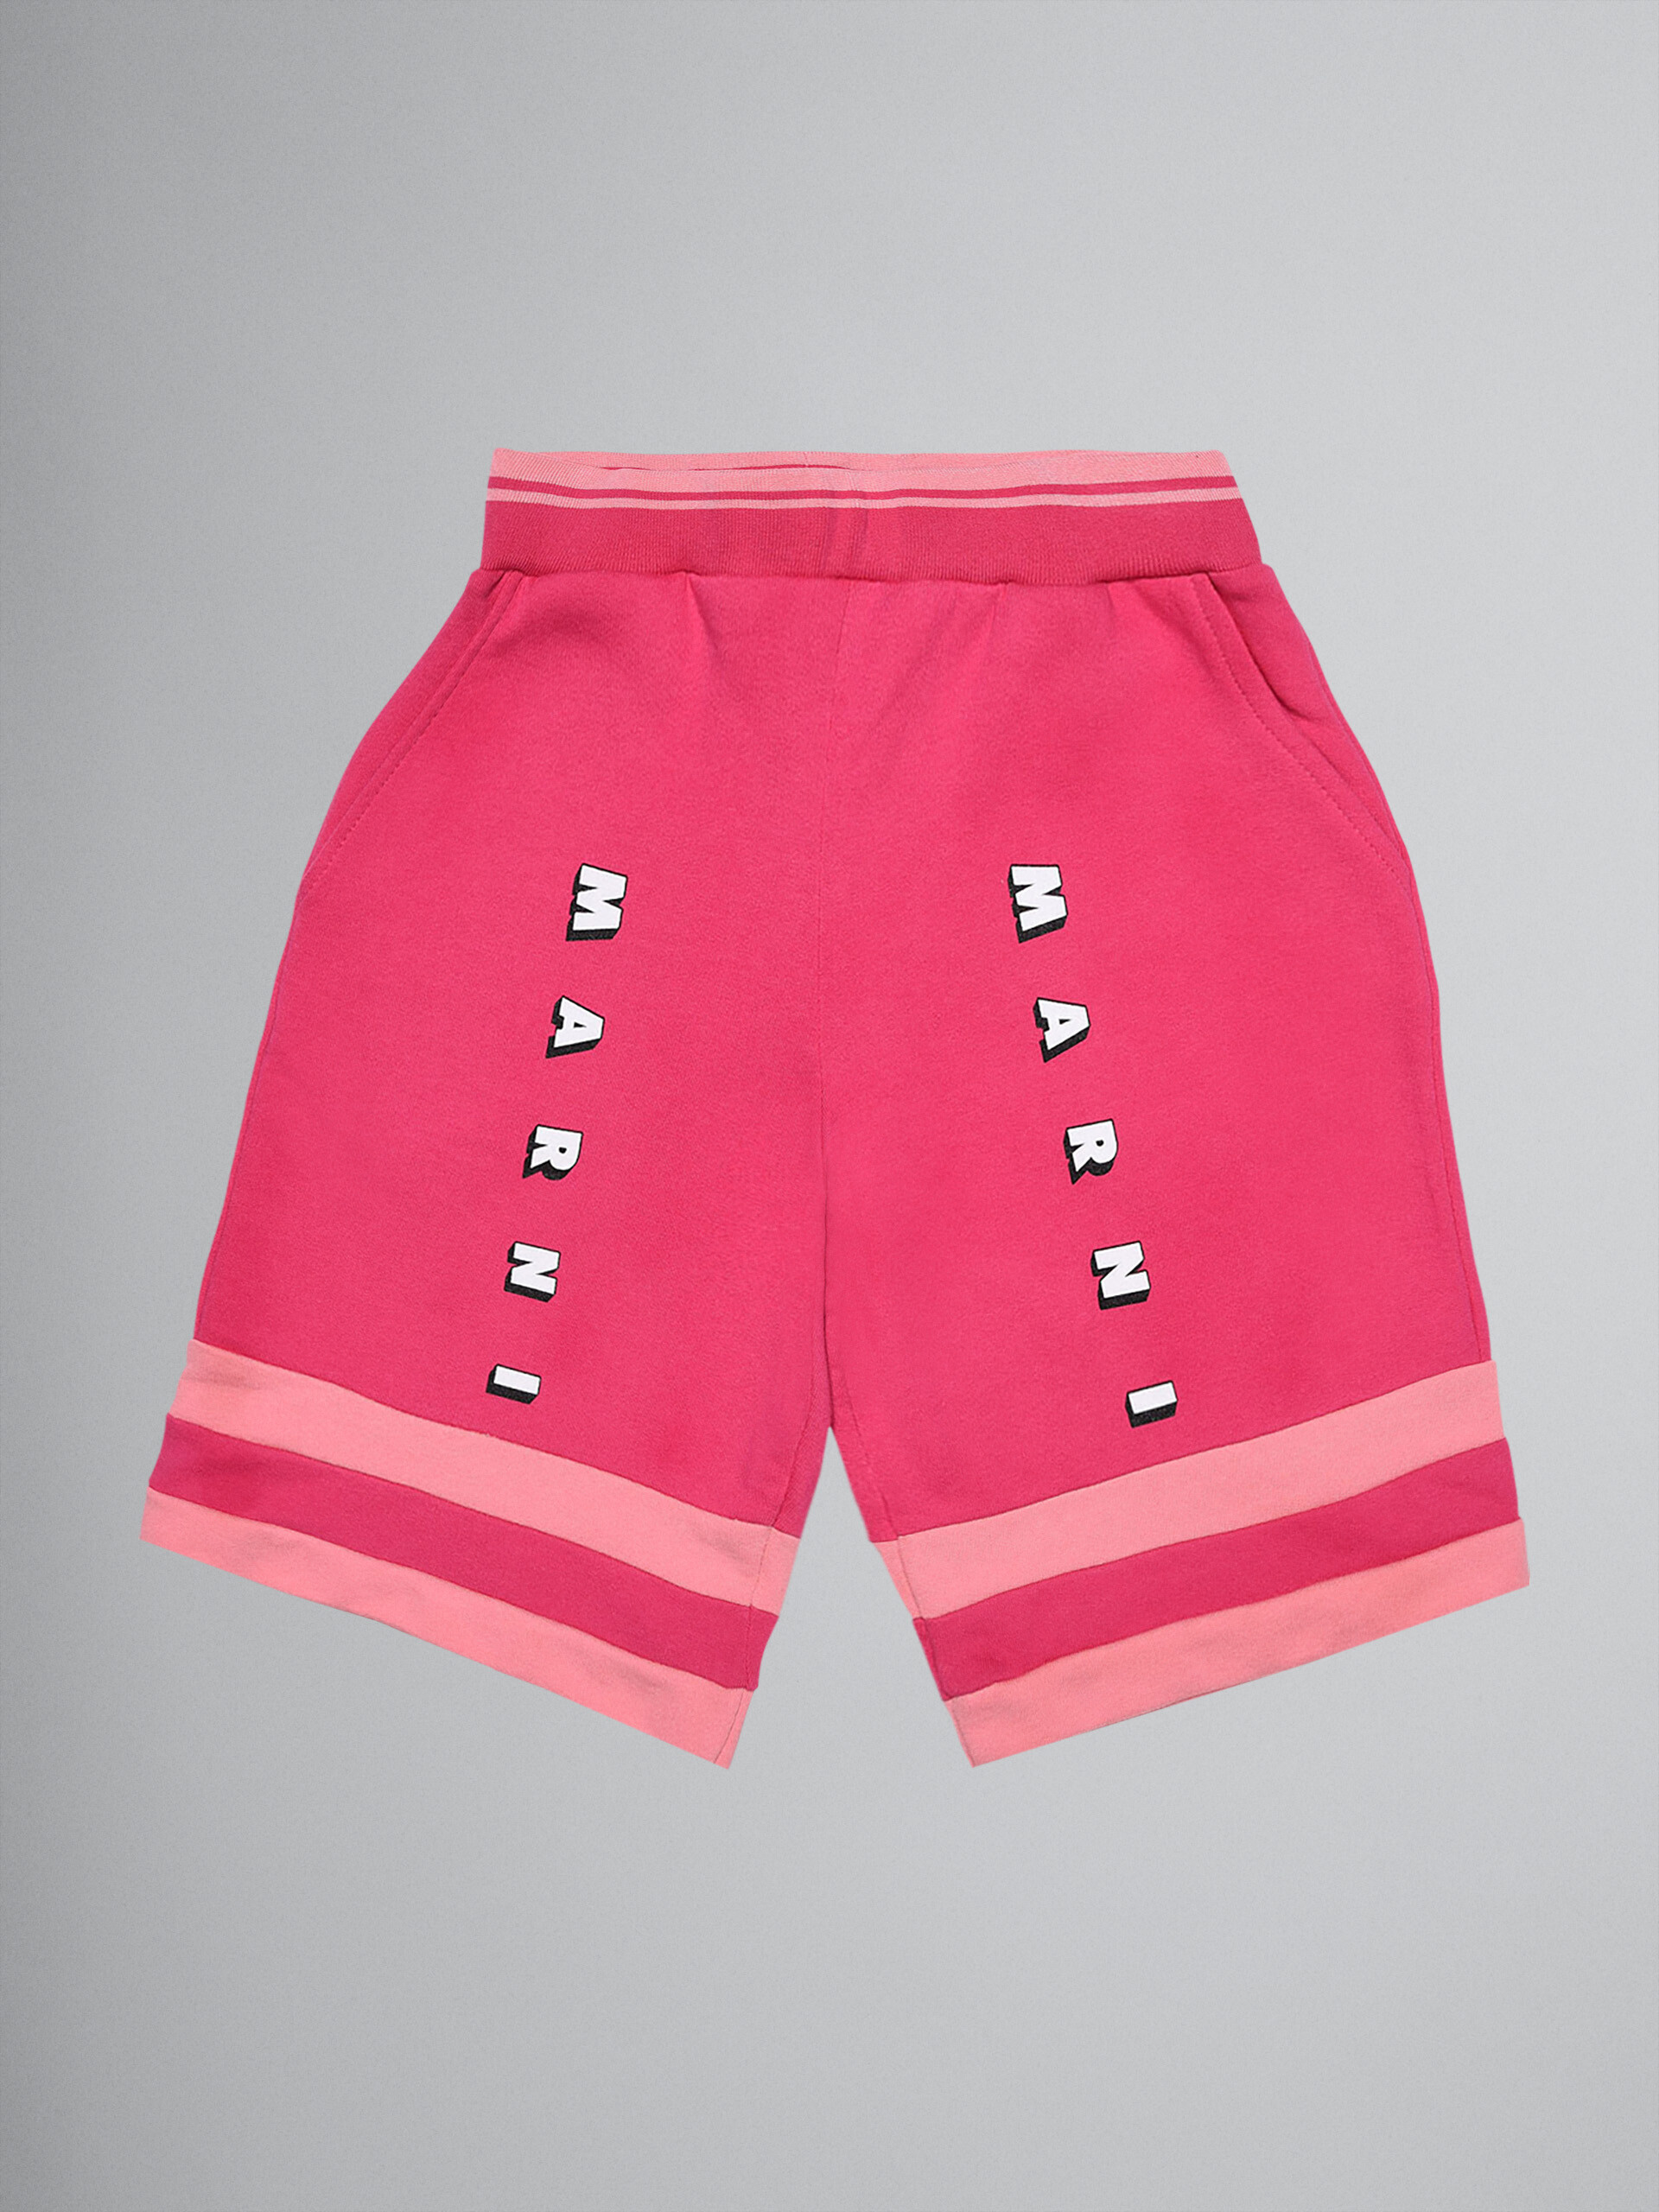 Pantalón de jogging corto sudadera de algodón rosa color block - Pantalones - Image 1